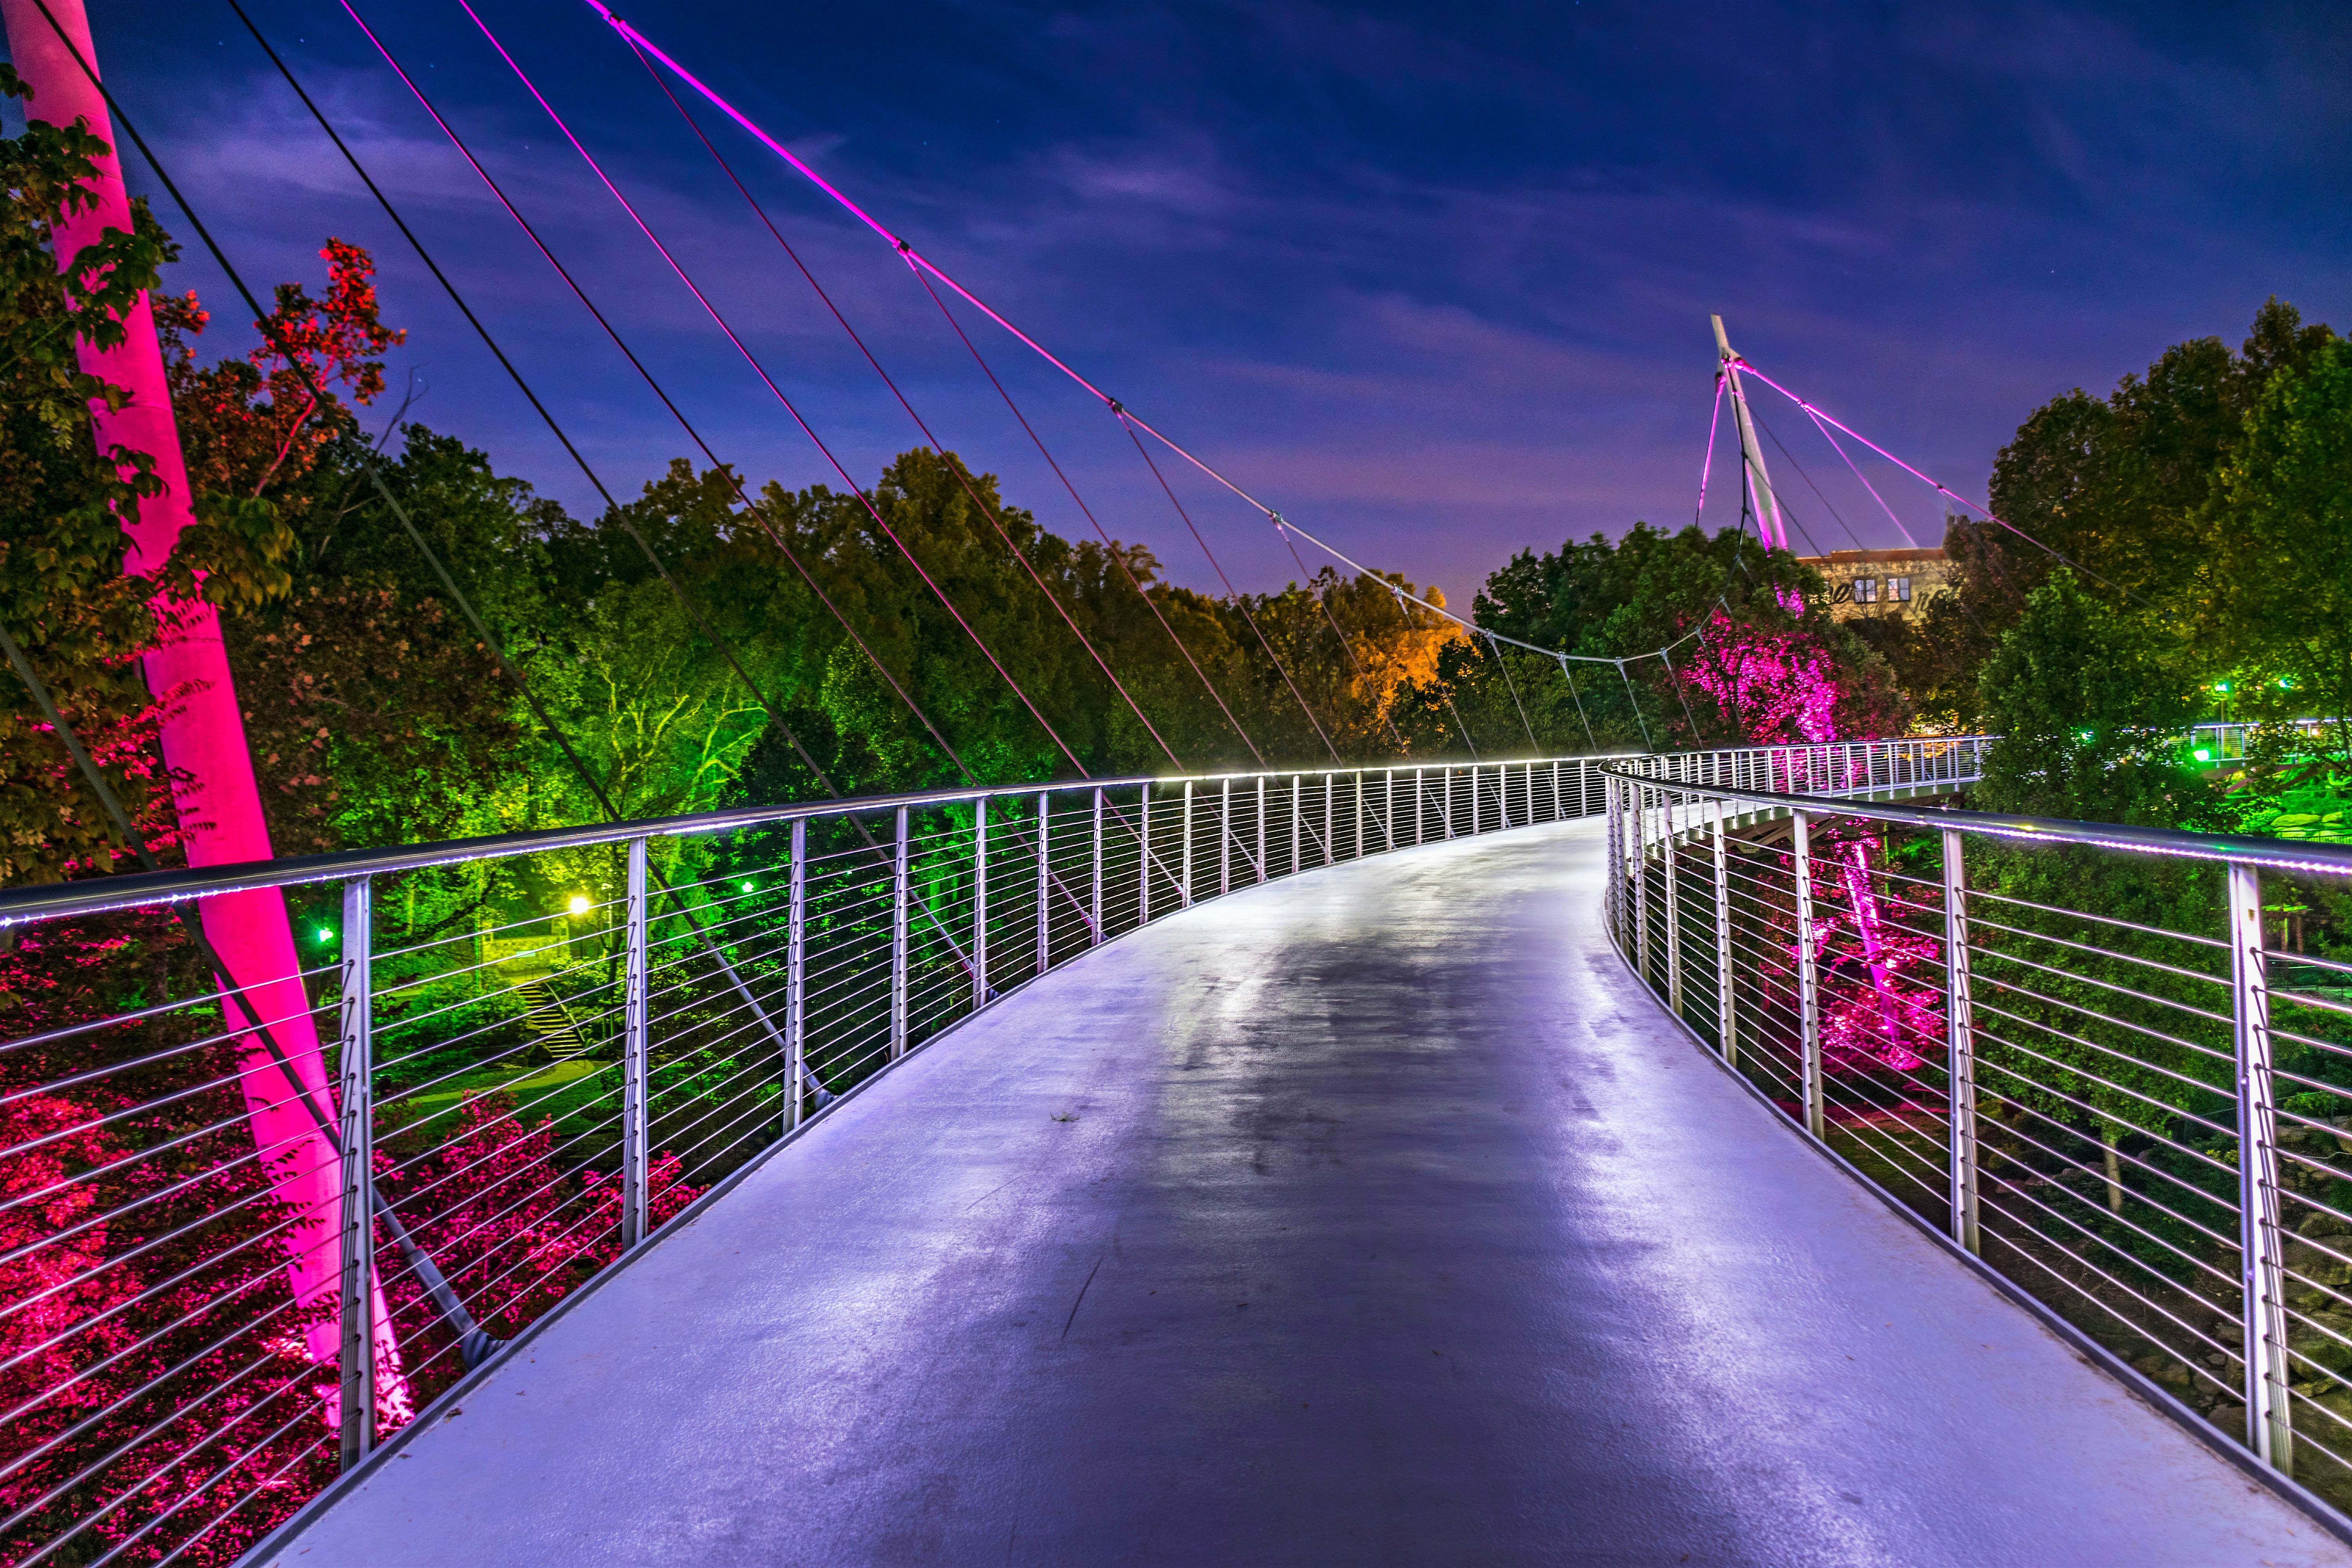 An illuminated footbridge at night